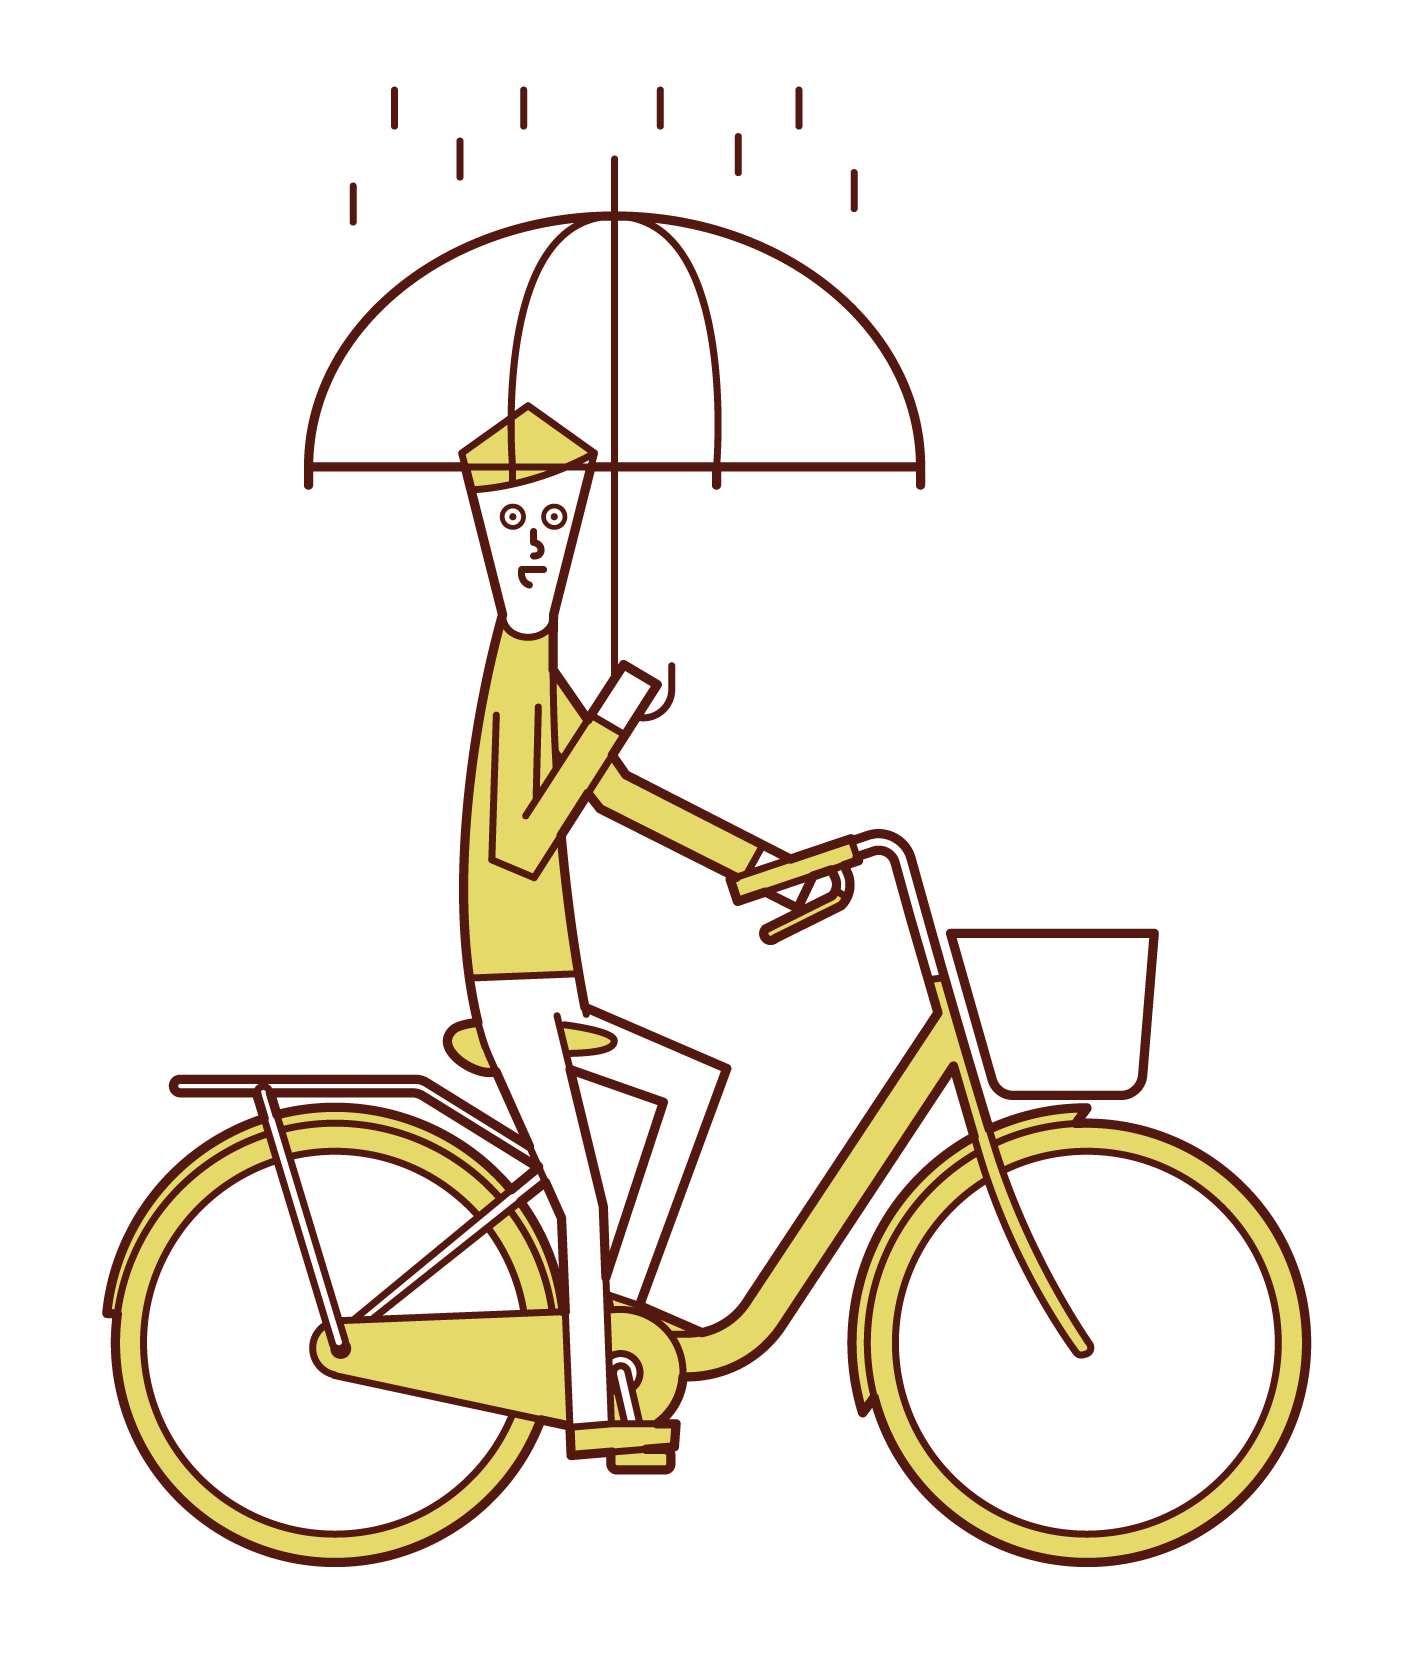 一個人（男性）在拿著雨傘時騎自行車的插圖